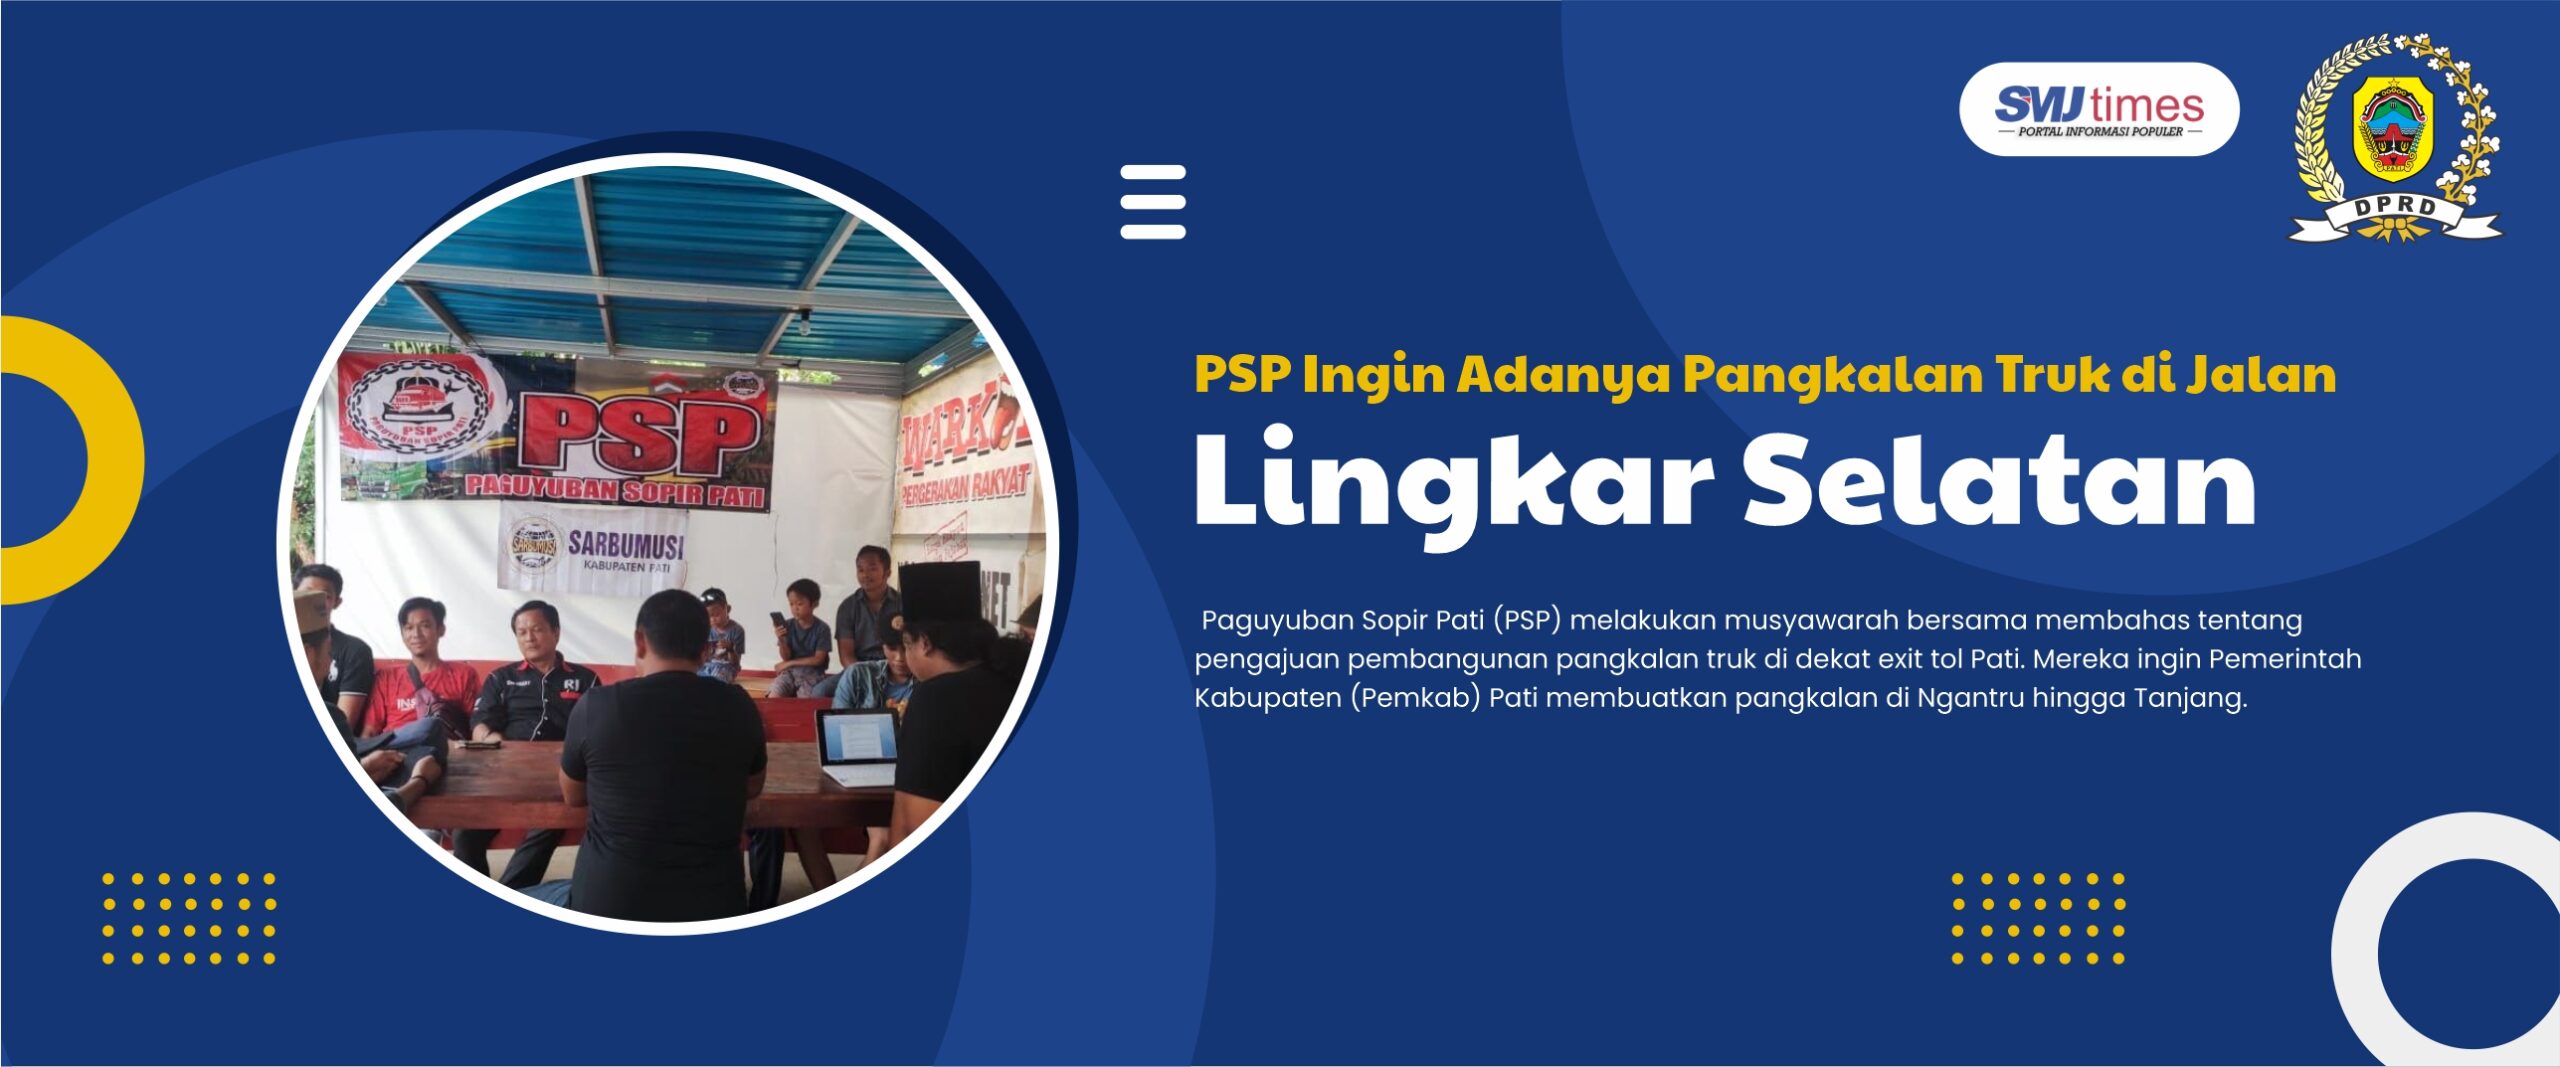 PSP Ingin Adanya Pangkalan Truk di Jalan Lingkar Selatan